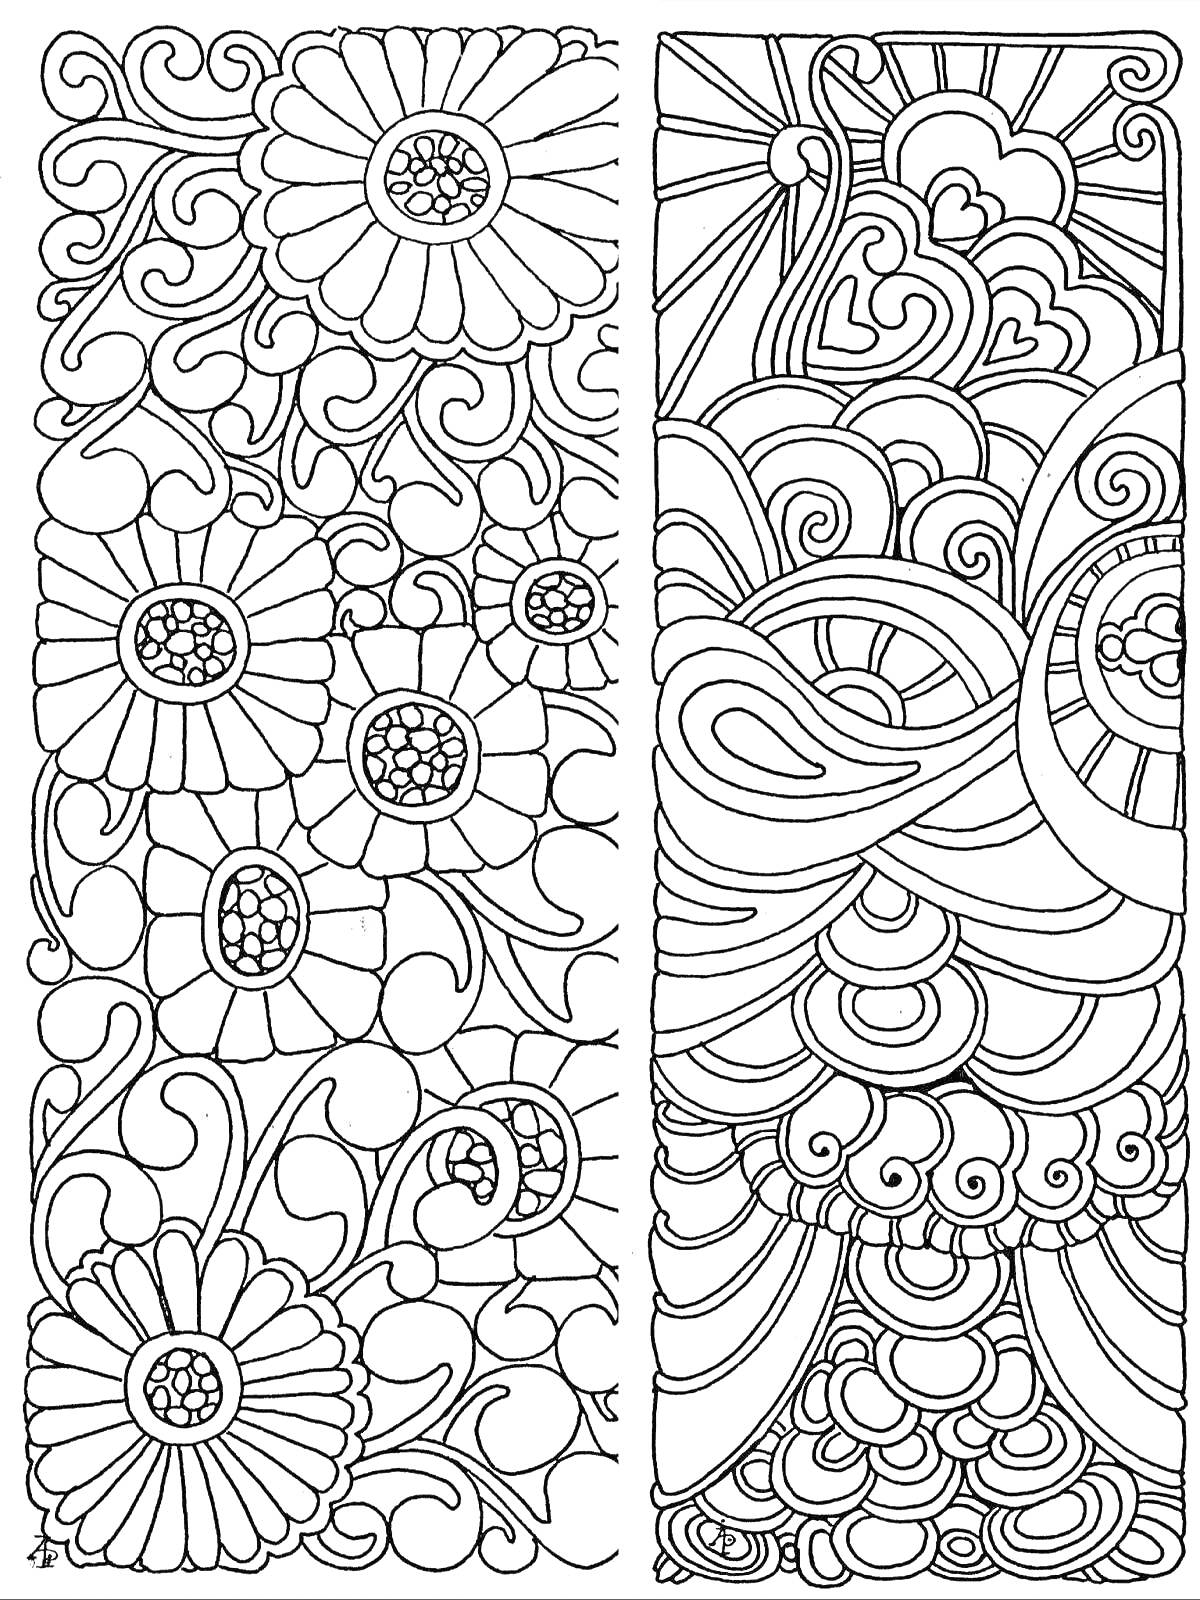 Раскраска Закладка антистресс с цветами, завитками и абстрактными узорами